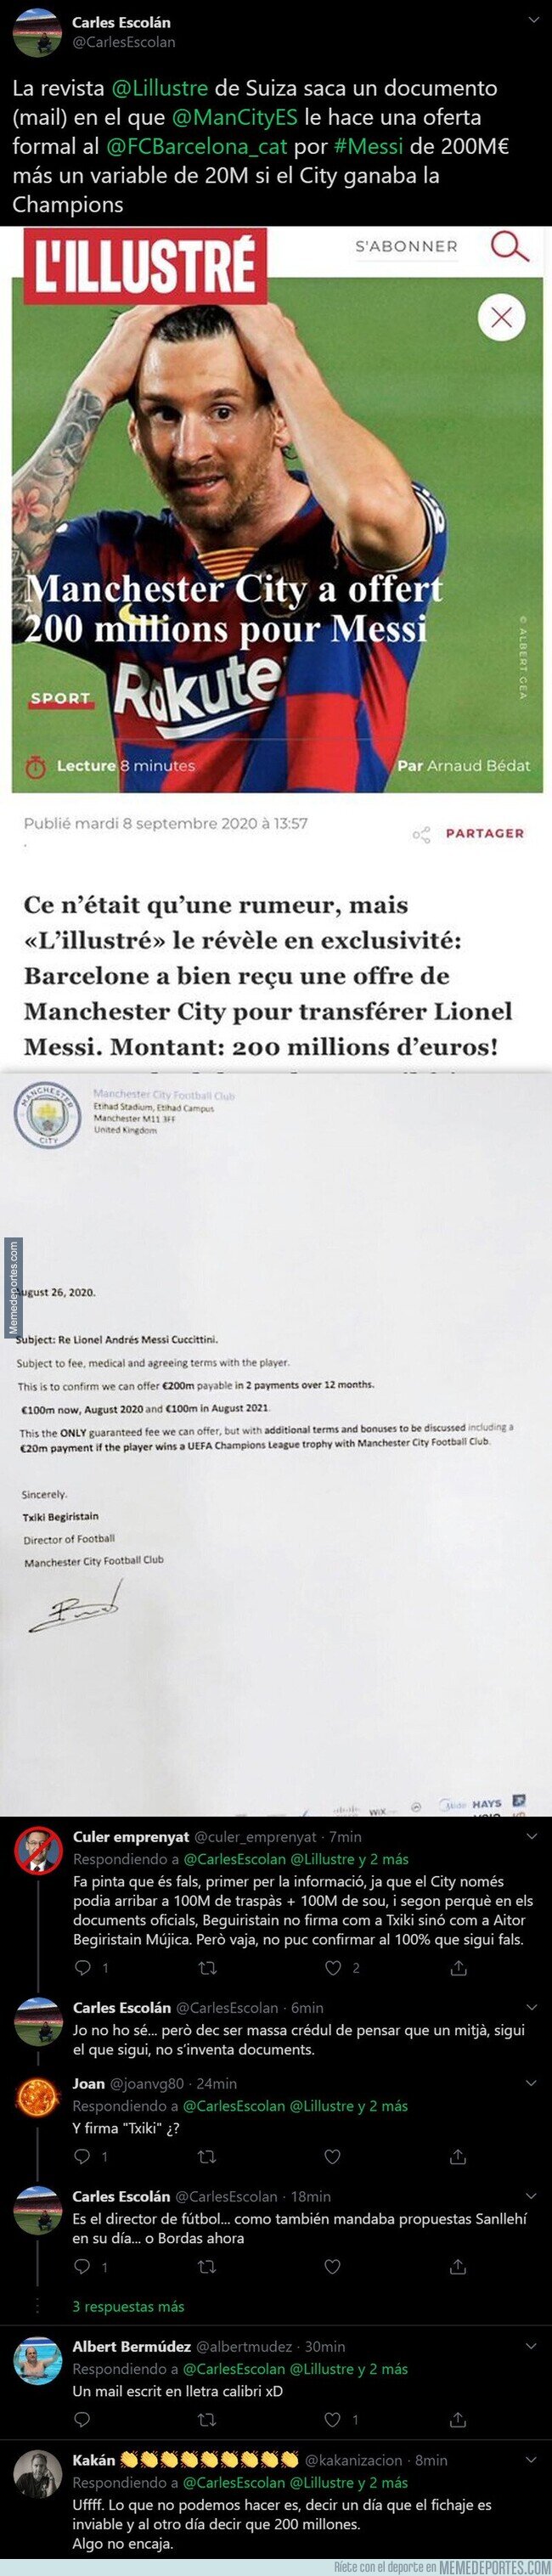 1115353 - Sale a la luz un supuesto mail del Manchester City al Barça ofreciendo este ofertón por Messi cuando no estaba en rebeldía